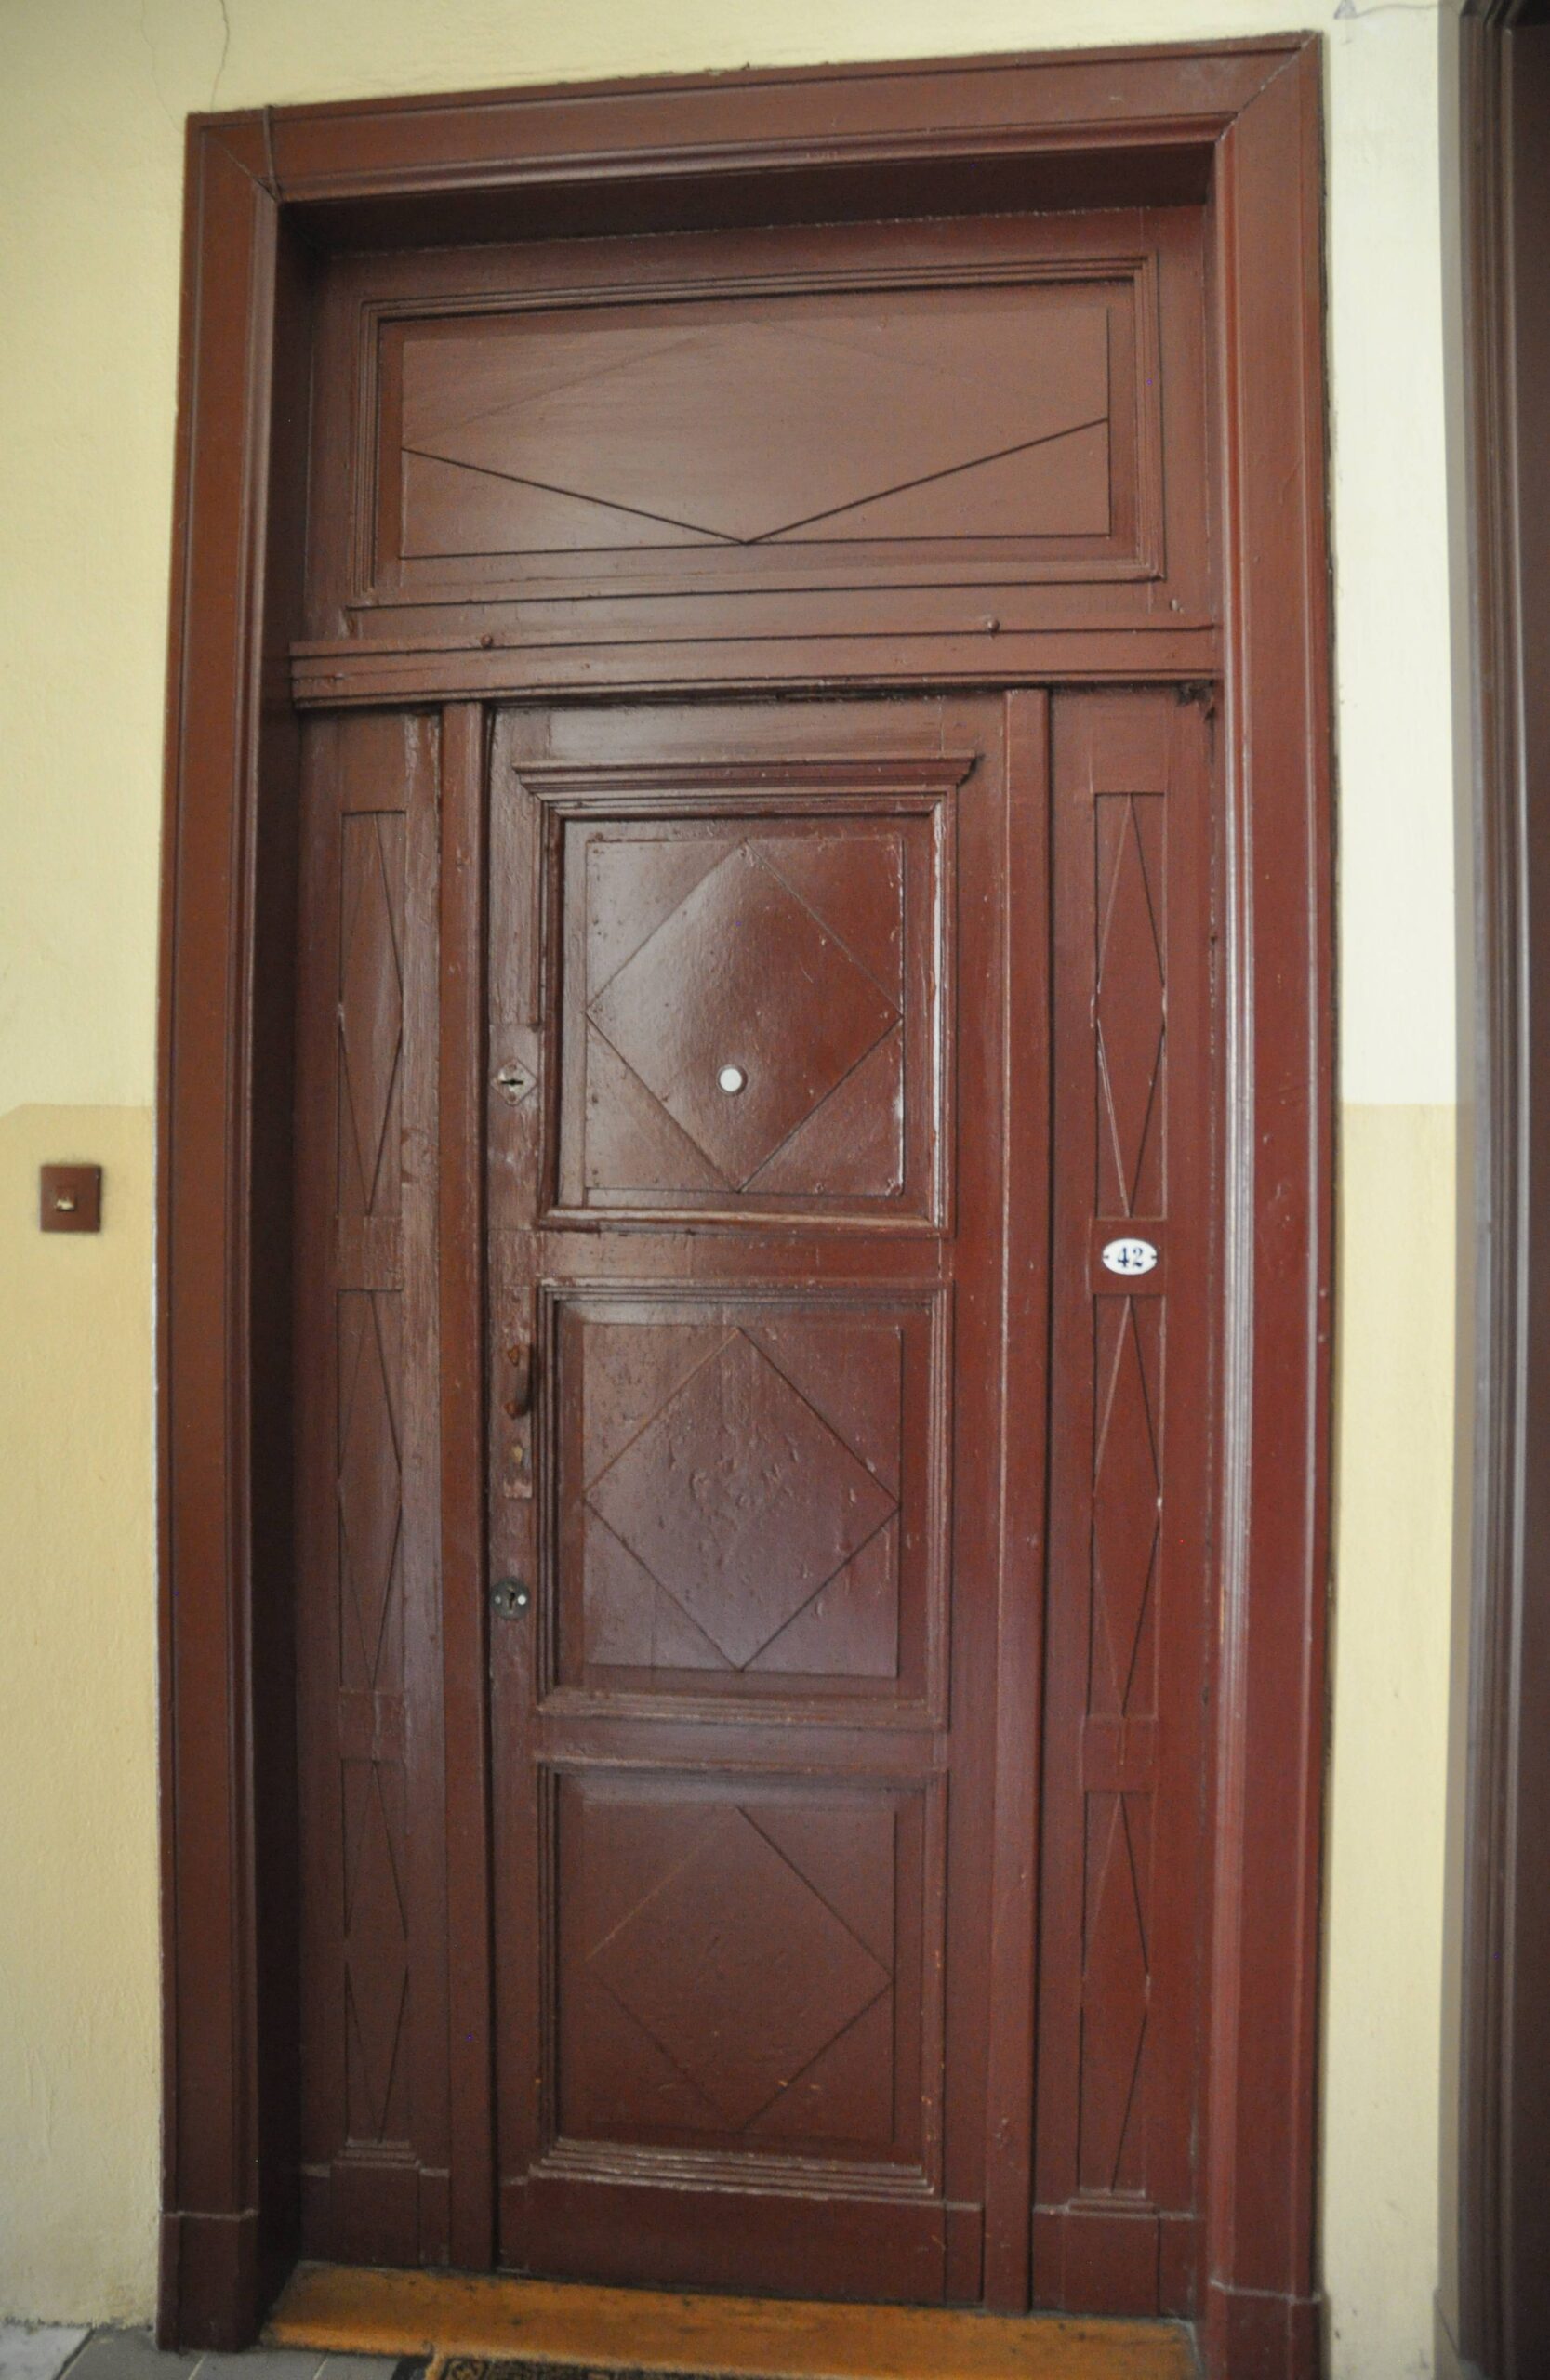 Klatka III - drzwi do mieszkania. Fot. Teresa Adamiak 2022 r., źródło: AOD III.